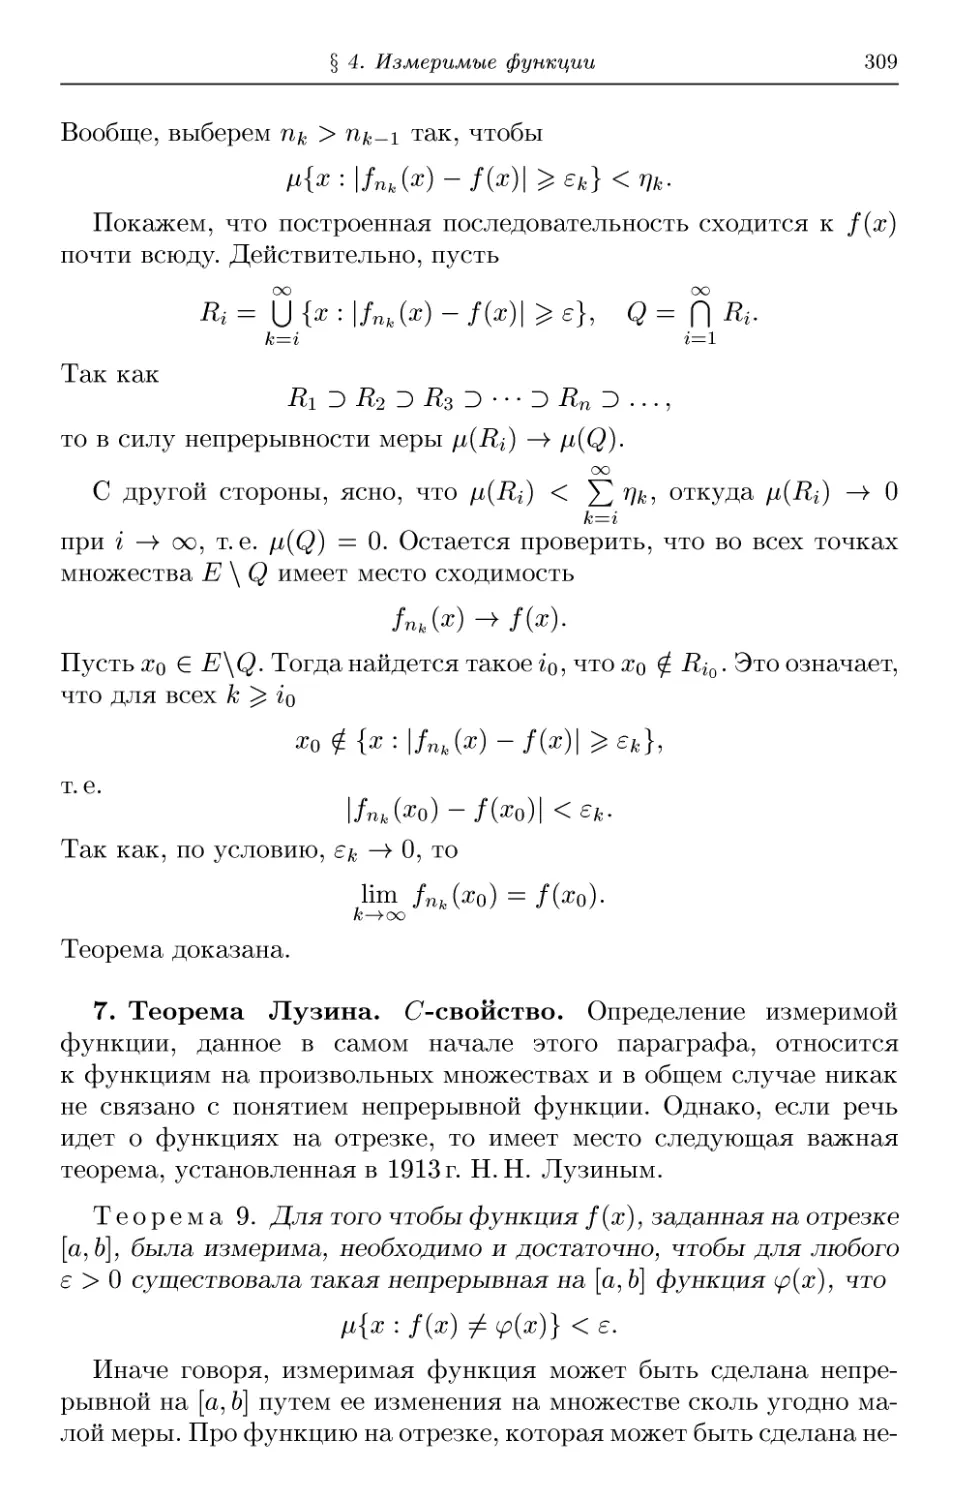 7. Теорема Лузина. C-свойство